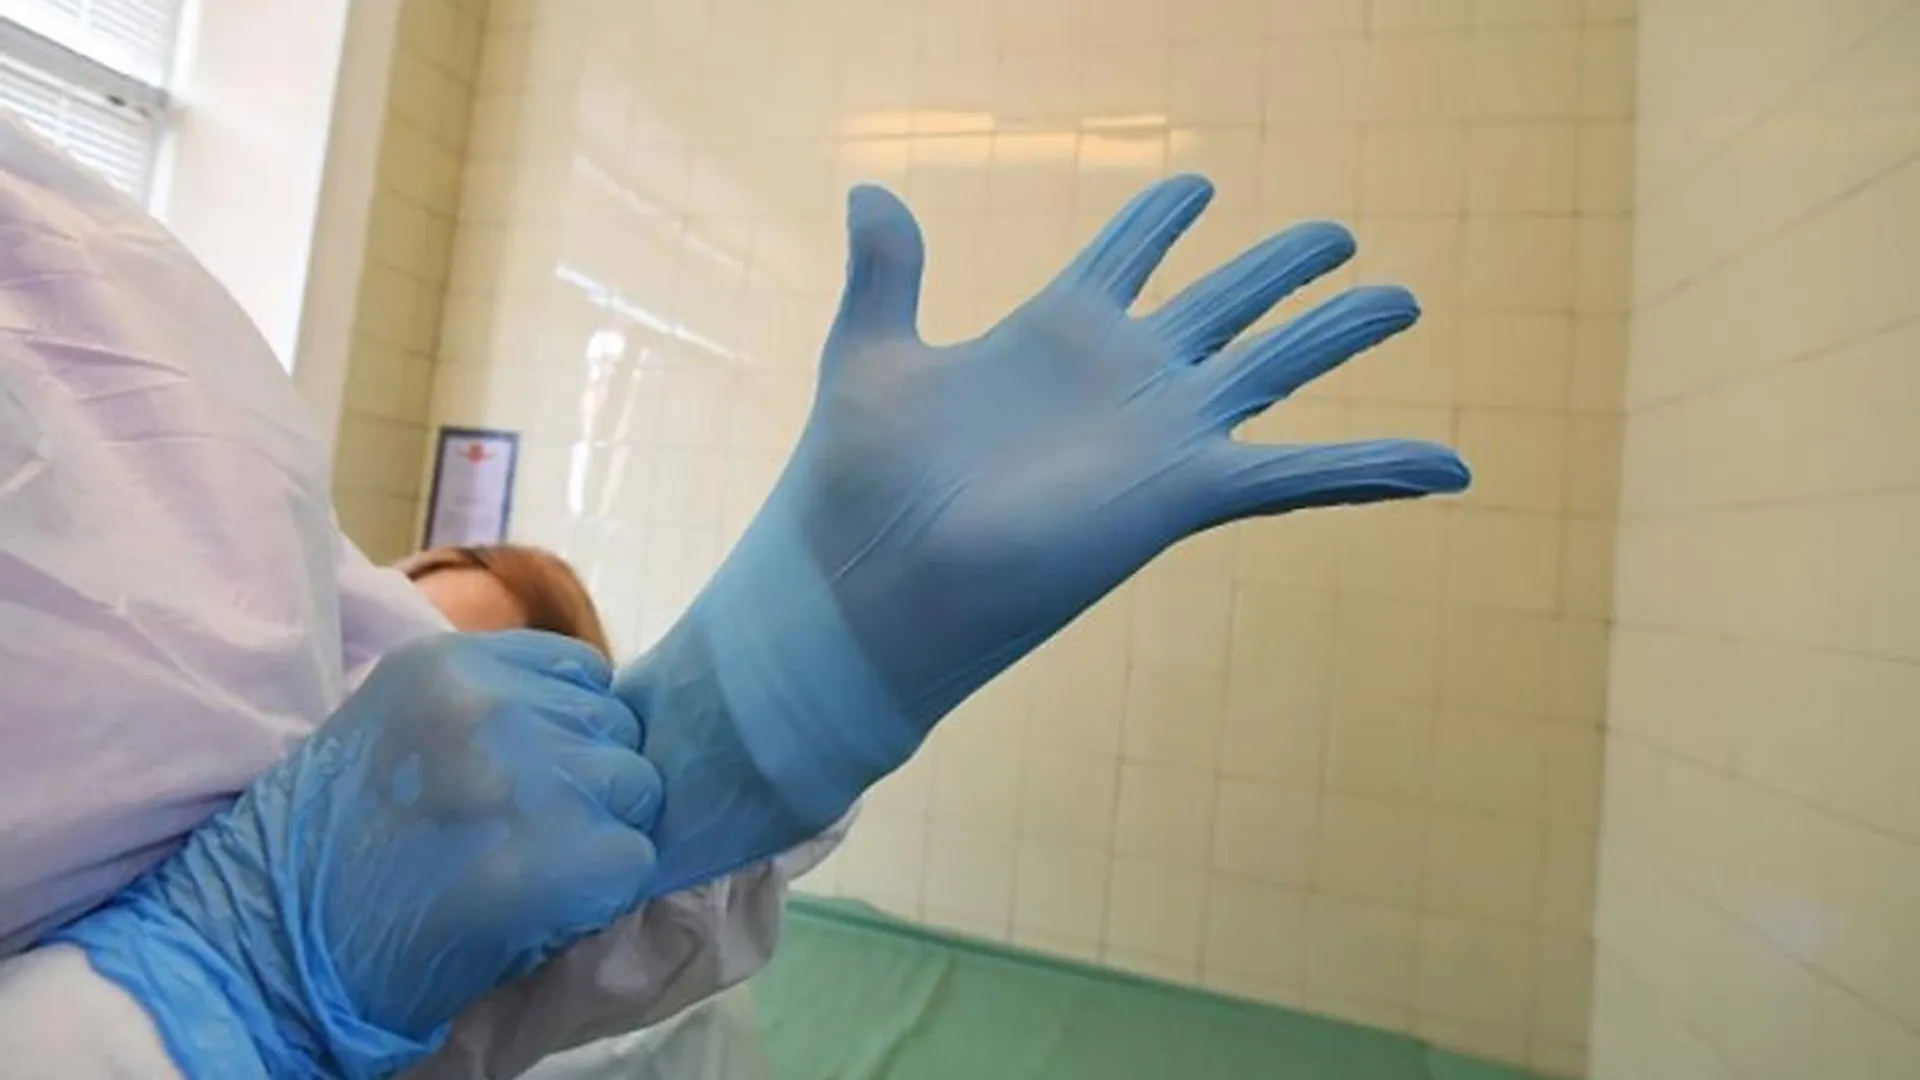 Эксперты рассказали, как безопасно избавиться от использованных масок и перчаток